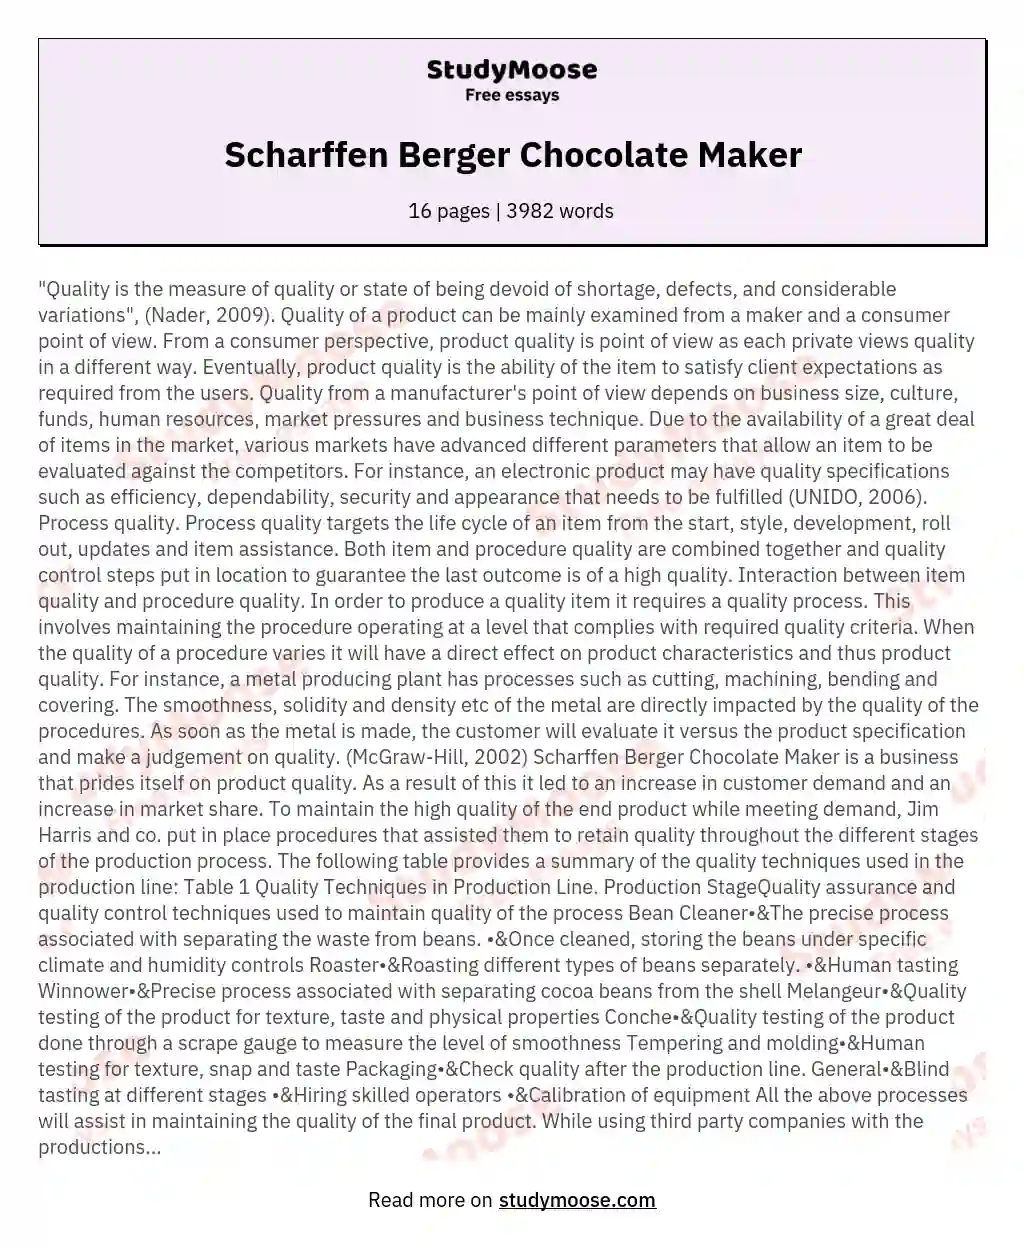 Scharffen Berger Chocolate Maker essay